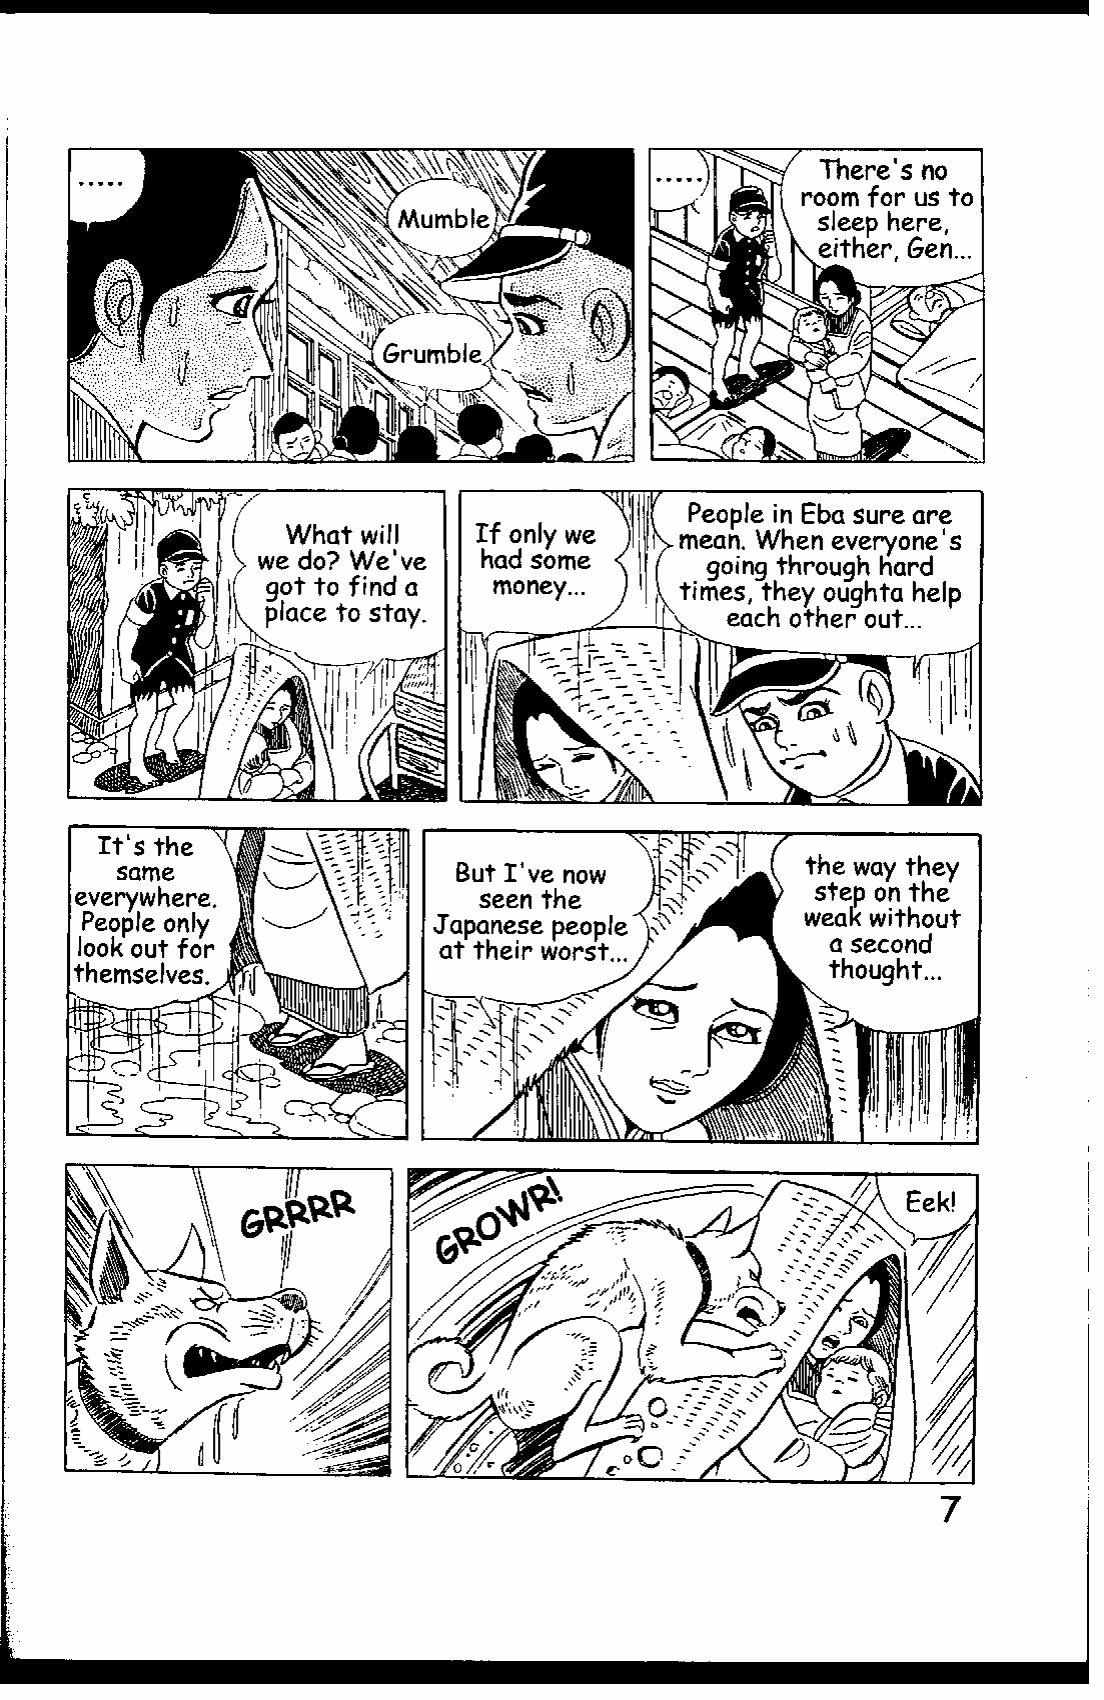 Hadashi No Gen - 5 page 6-8d65a1d7